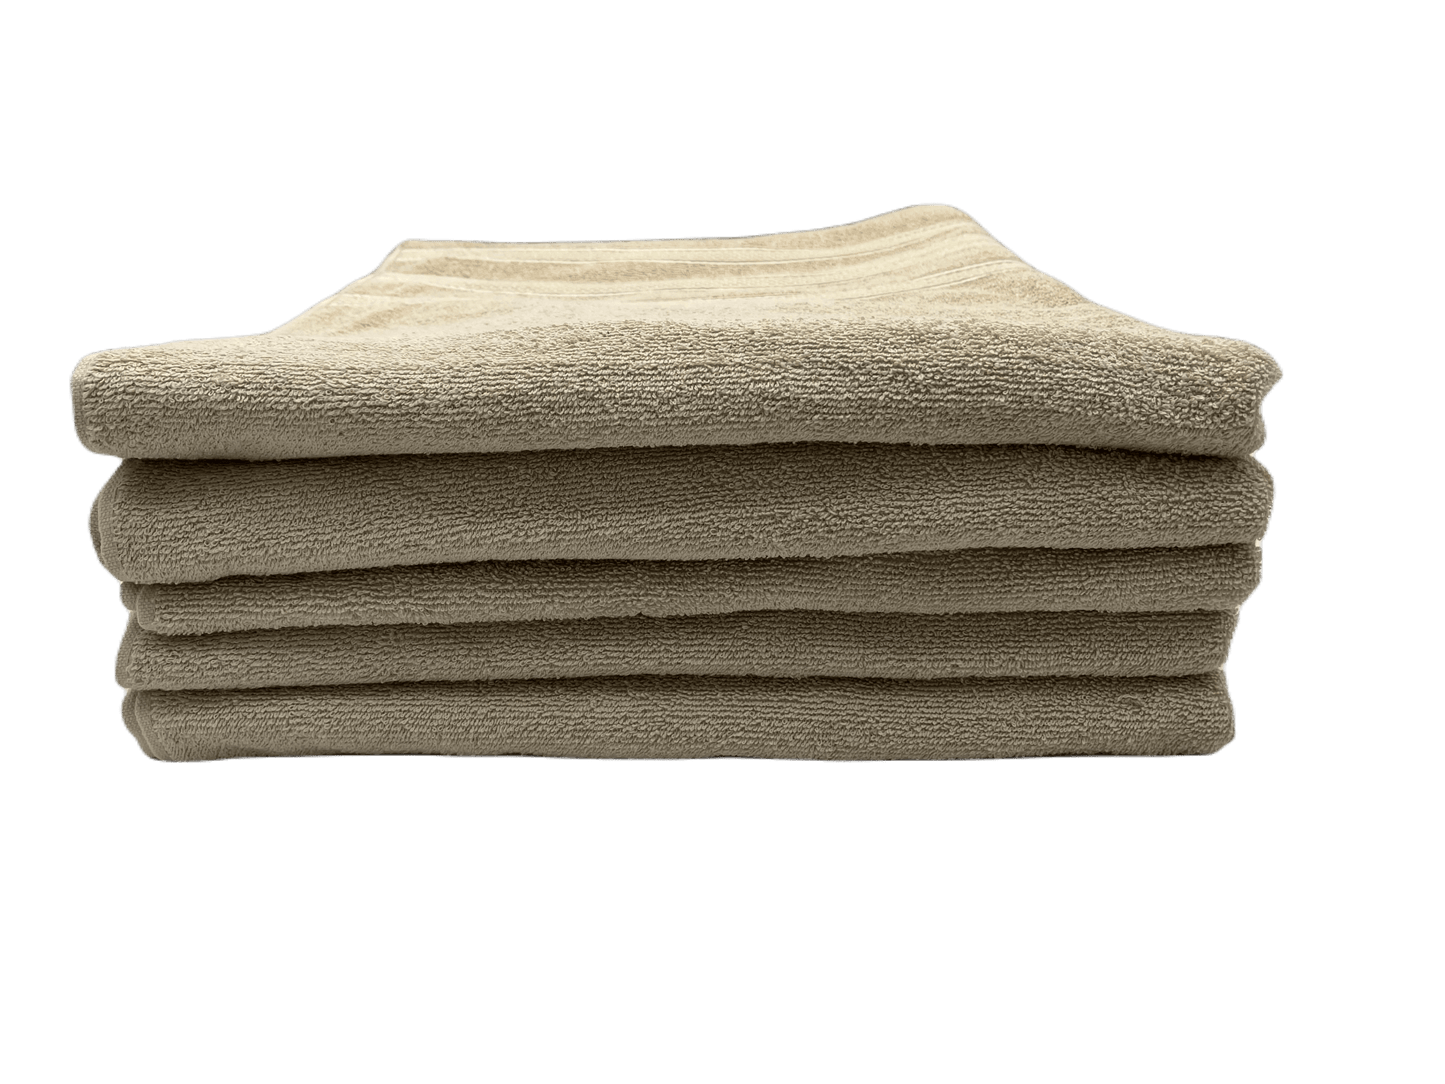 Toalla de algodón importado en medida "baño completo"  es súper suave y absorbente, tamaño de  .80 cm x 1.50 mts